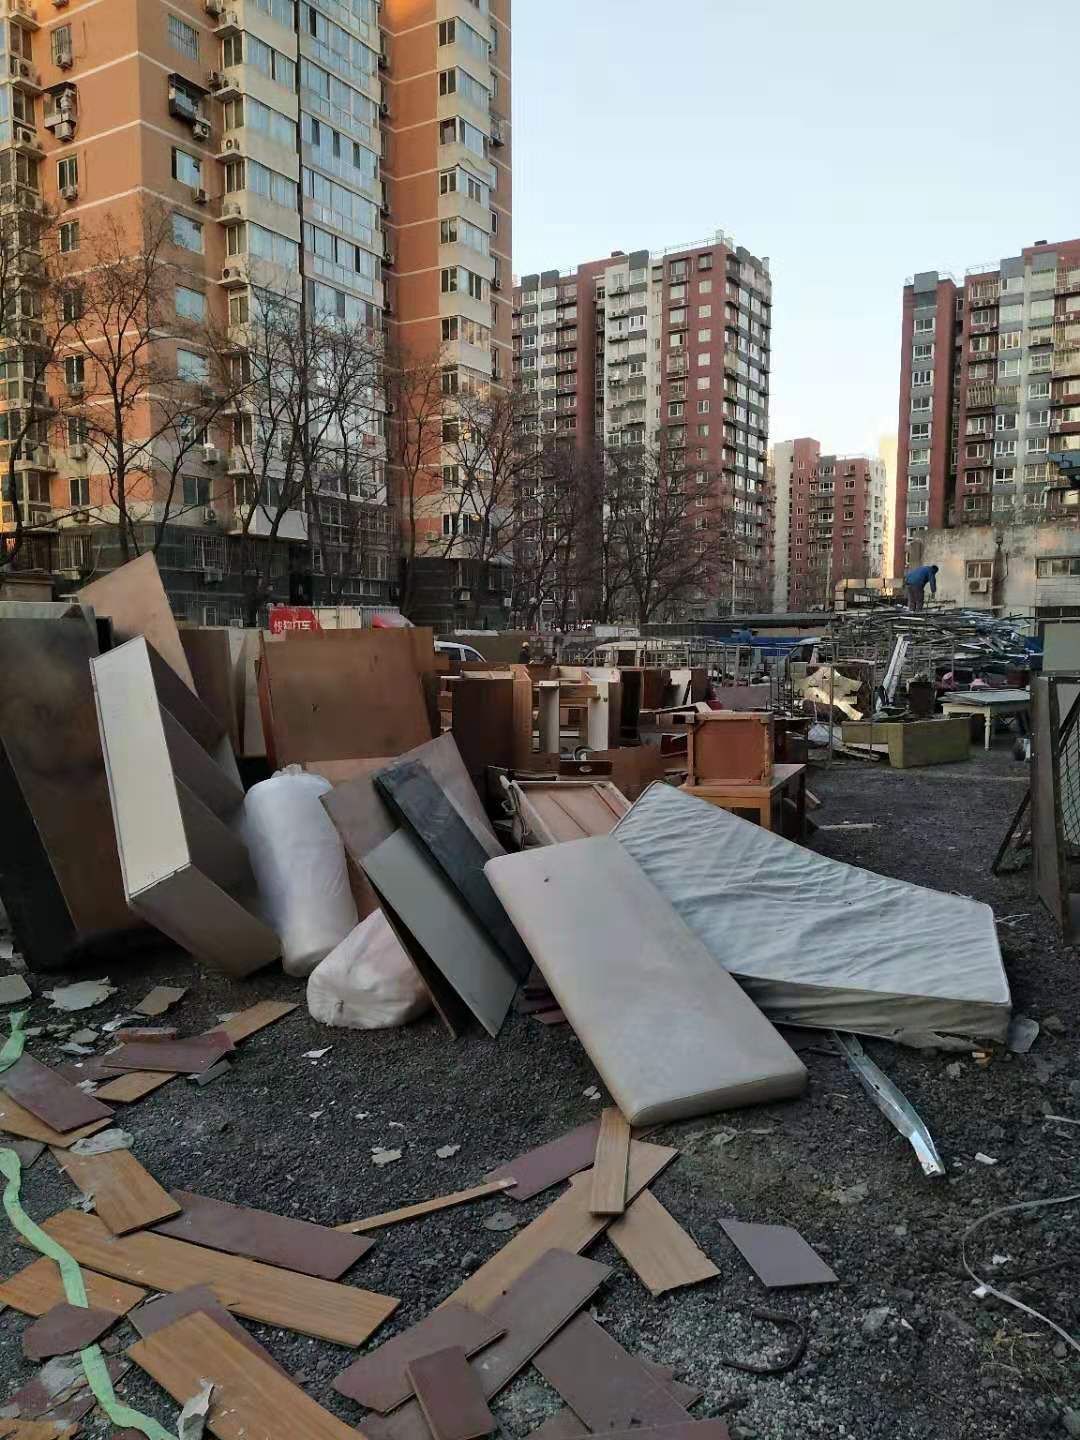 北京专业拆除公司 专业室内拆除公司 专业旧房拆除 专业拆除公司